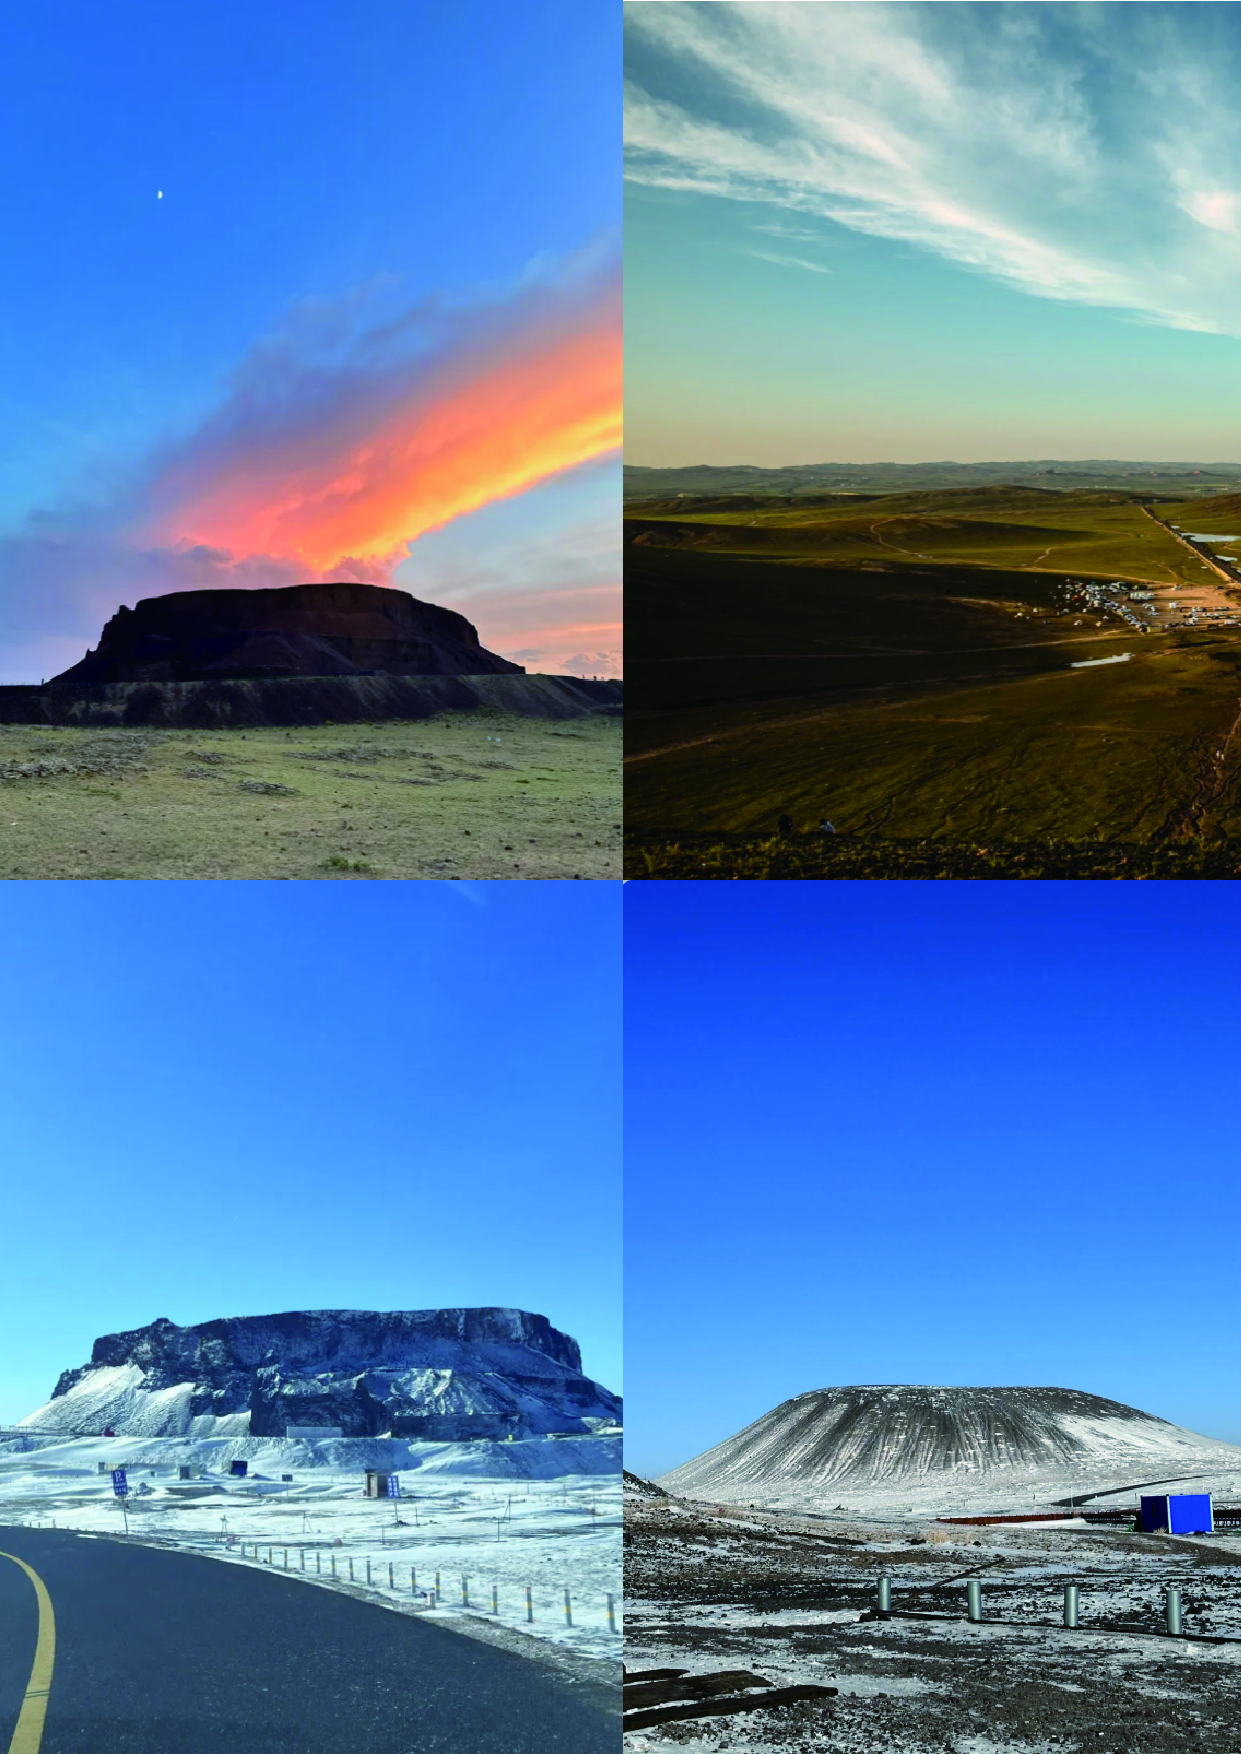 乌兰哈达火山地质园位于内蒙古自治区乌兰察布市,是中国境内唯一的